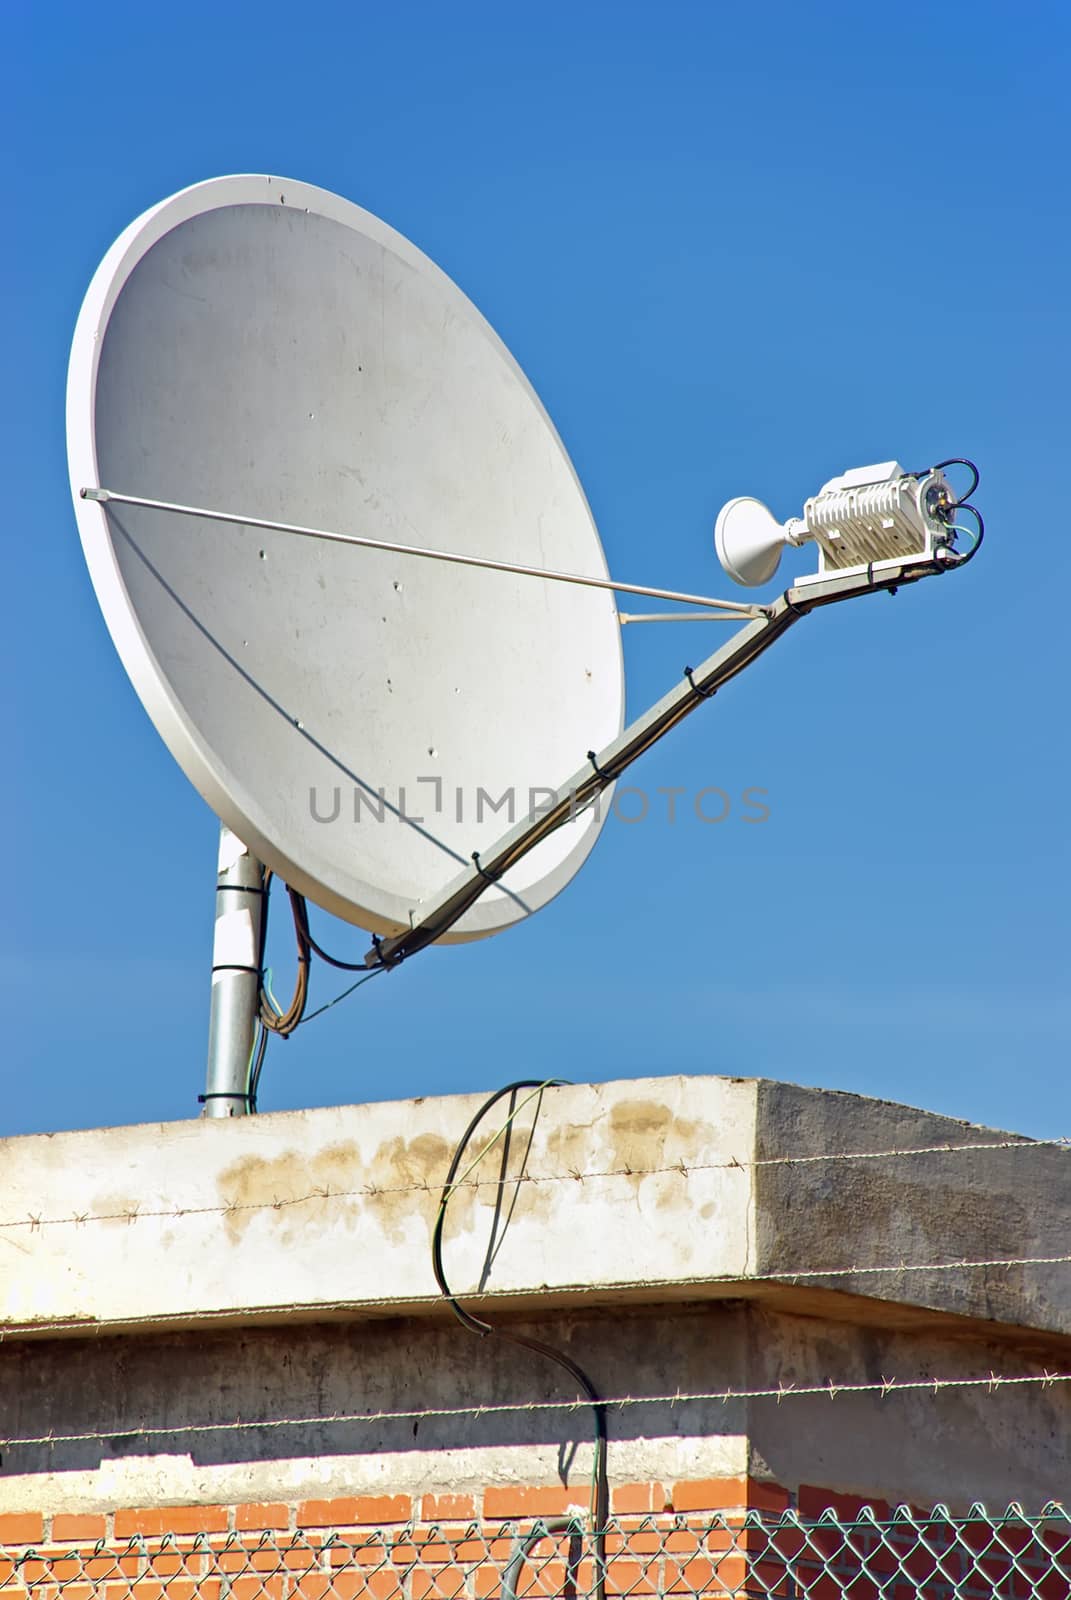 Parabollic Antenna to receive satellite signal